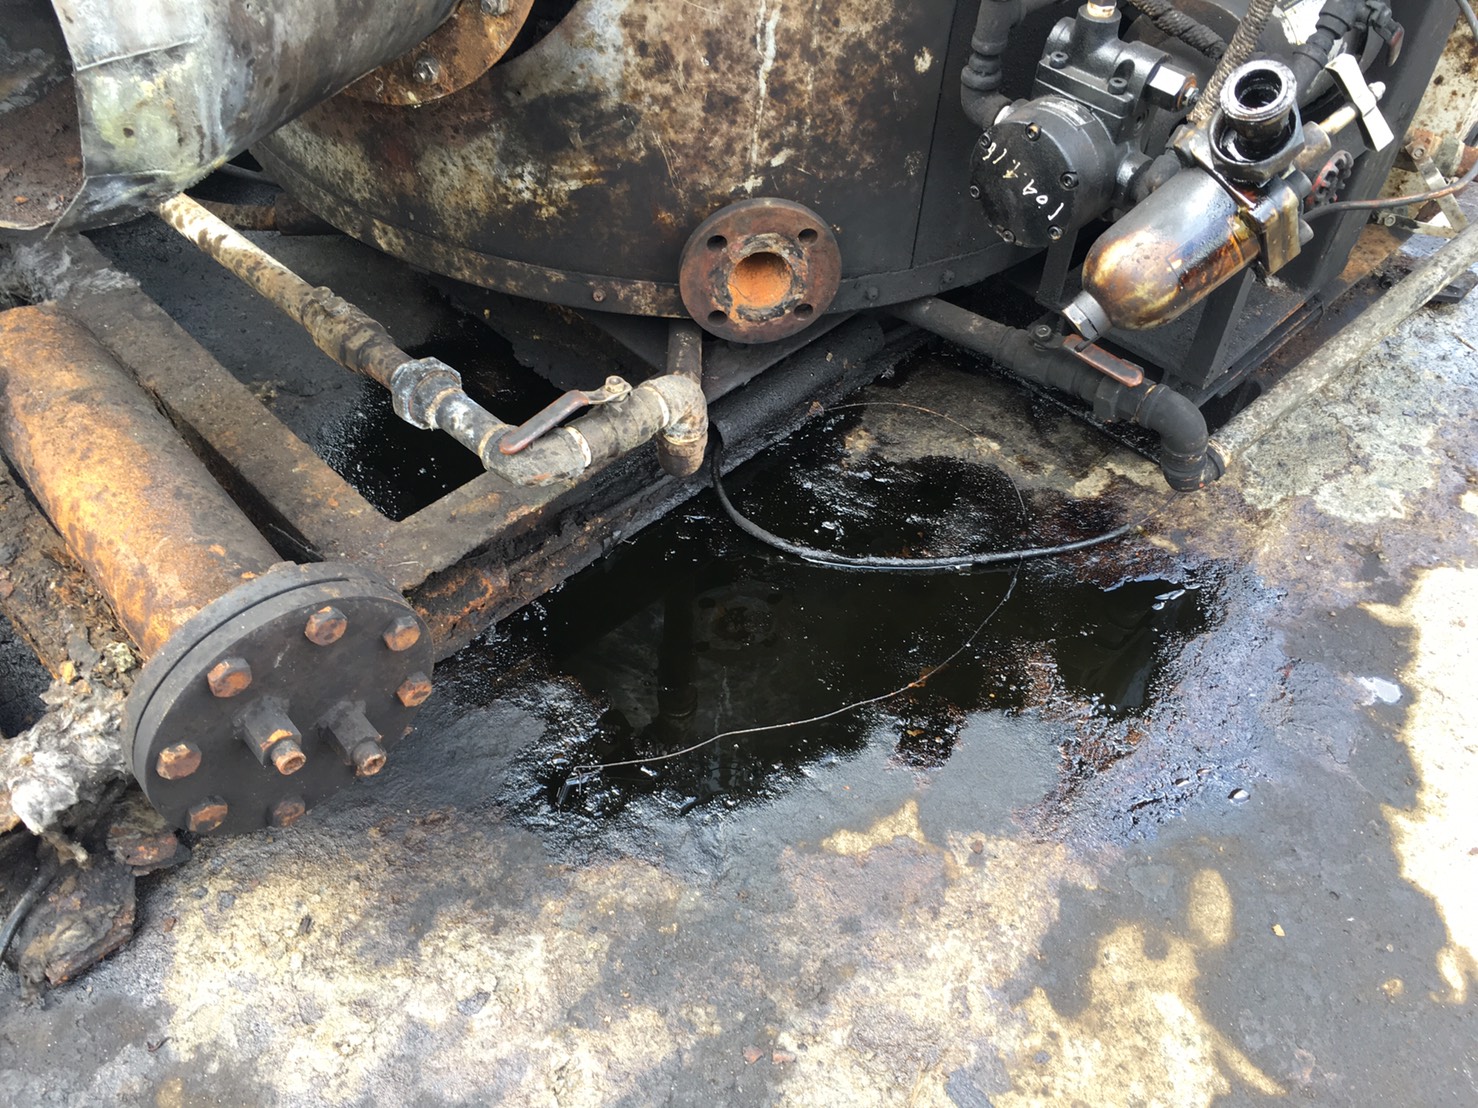 鍋爐設備管線更新時洩漏重油